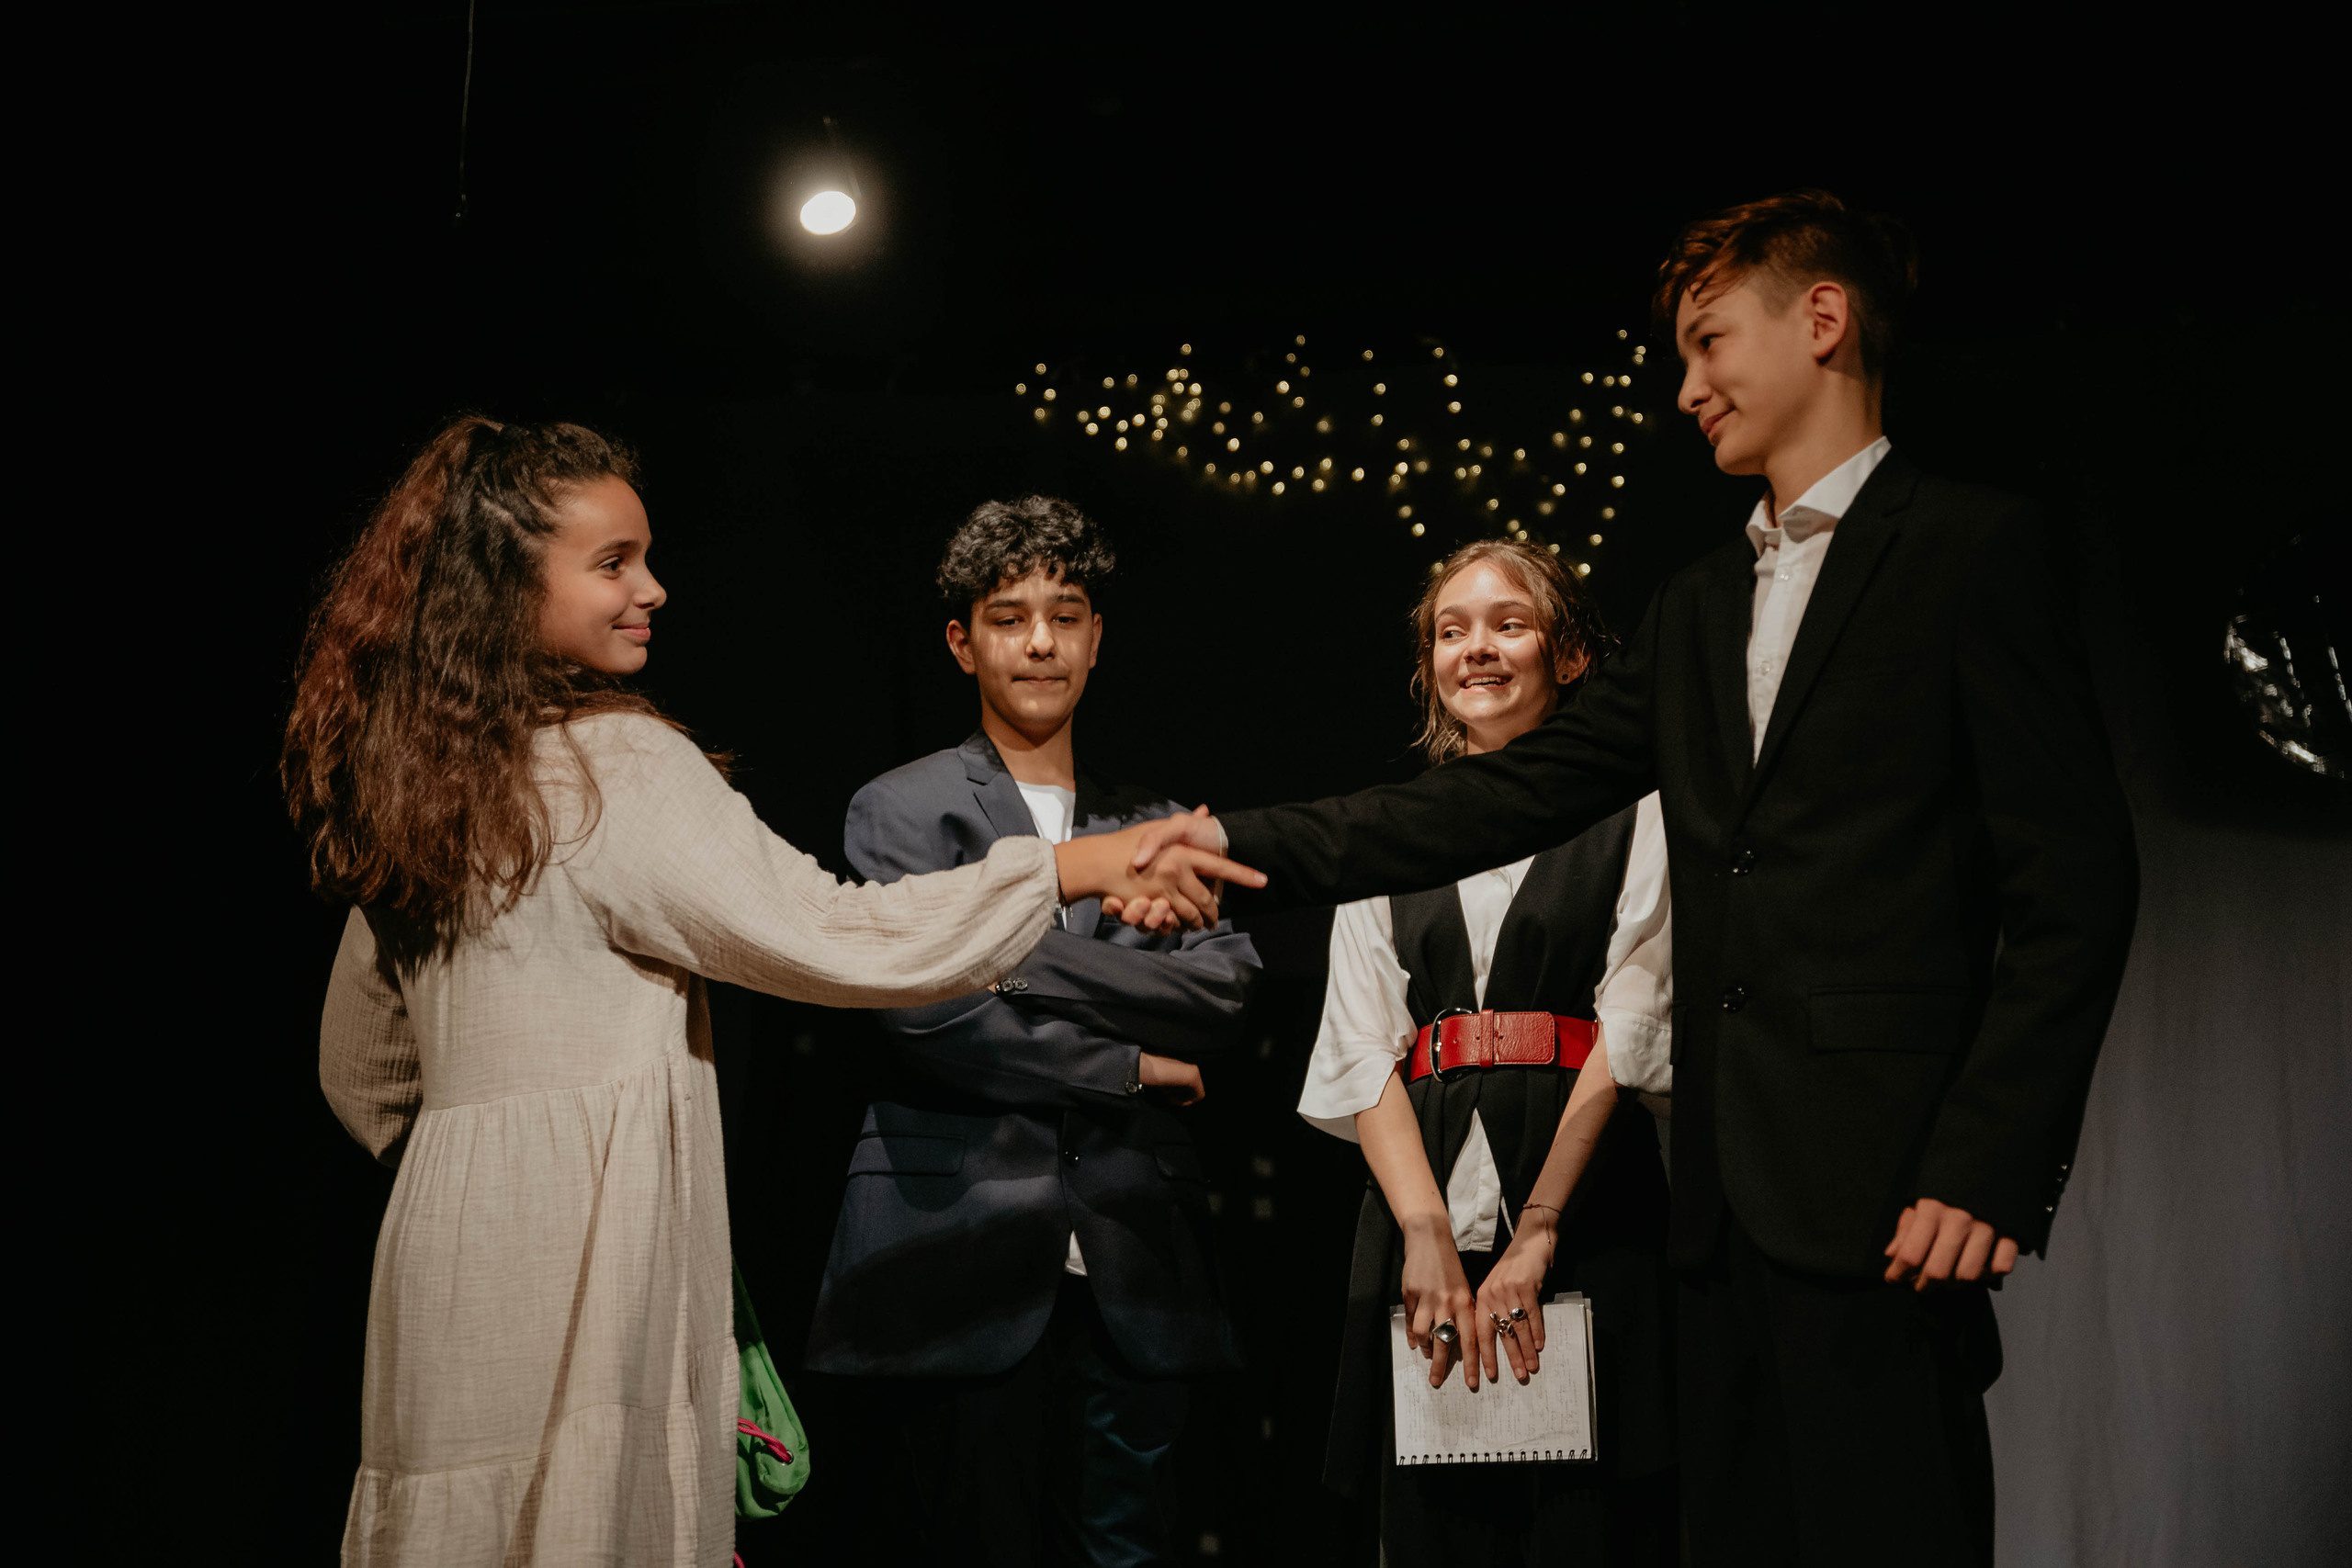 Подростки стоят на сцене разыгрывают номер из спектакля, где мальчик пожимает руку девочке